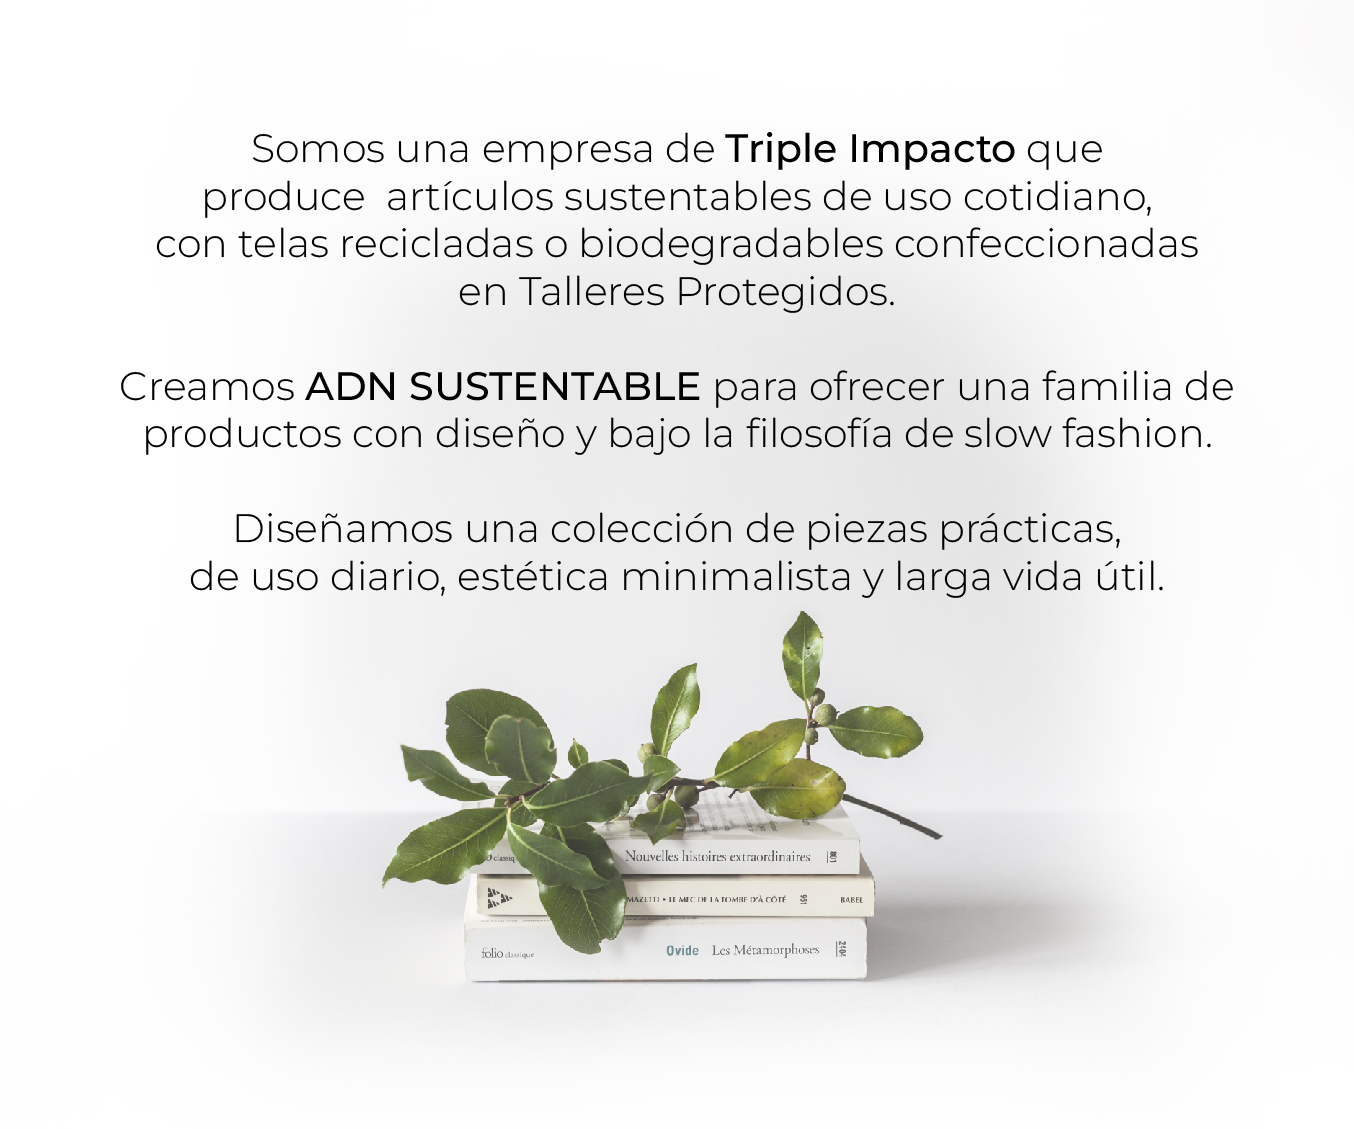 Somos una empresa de Triple Impacto que produce  artículos sustentables de uso cotidiano, con telas recicladas o biodegradables confeccionadas en Talleres Protegidos. 